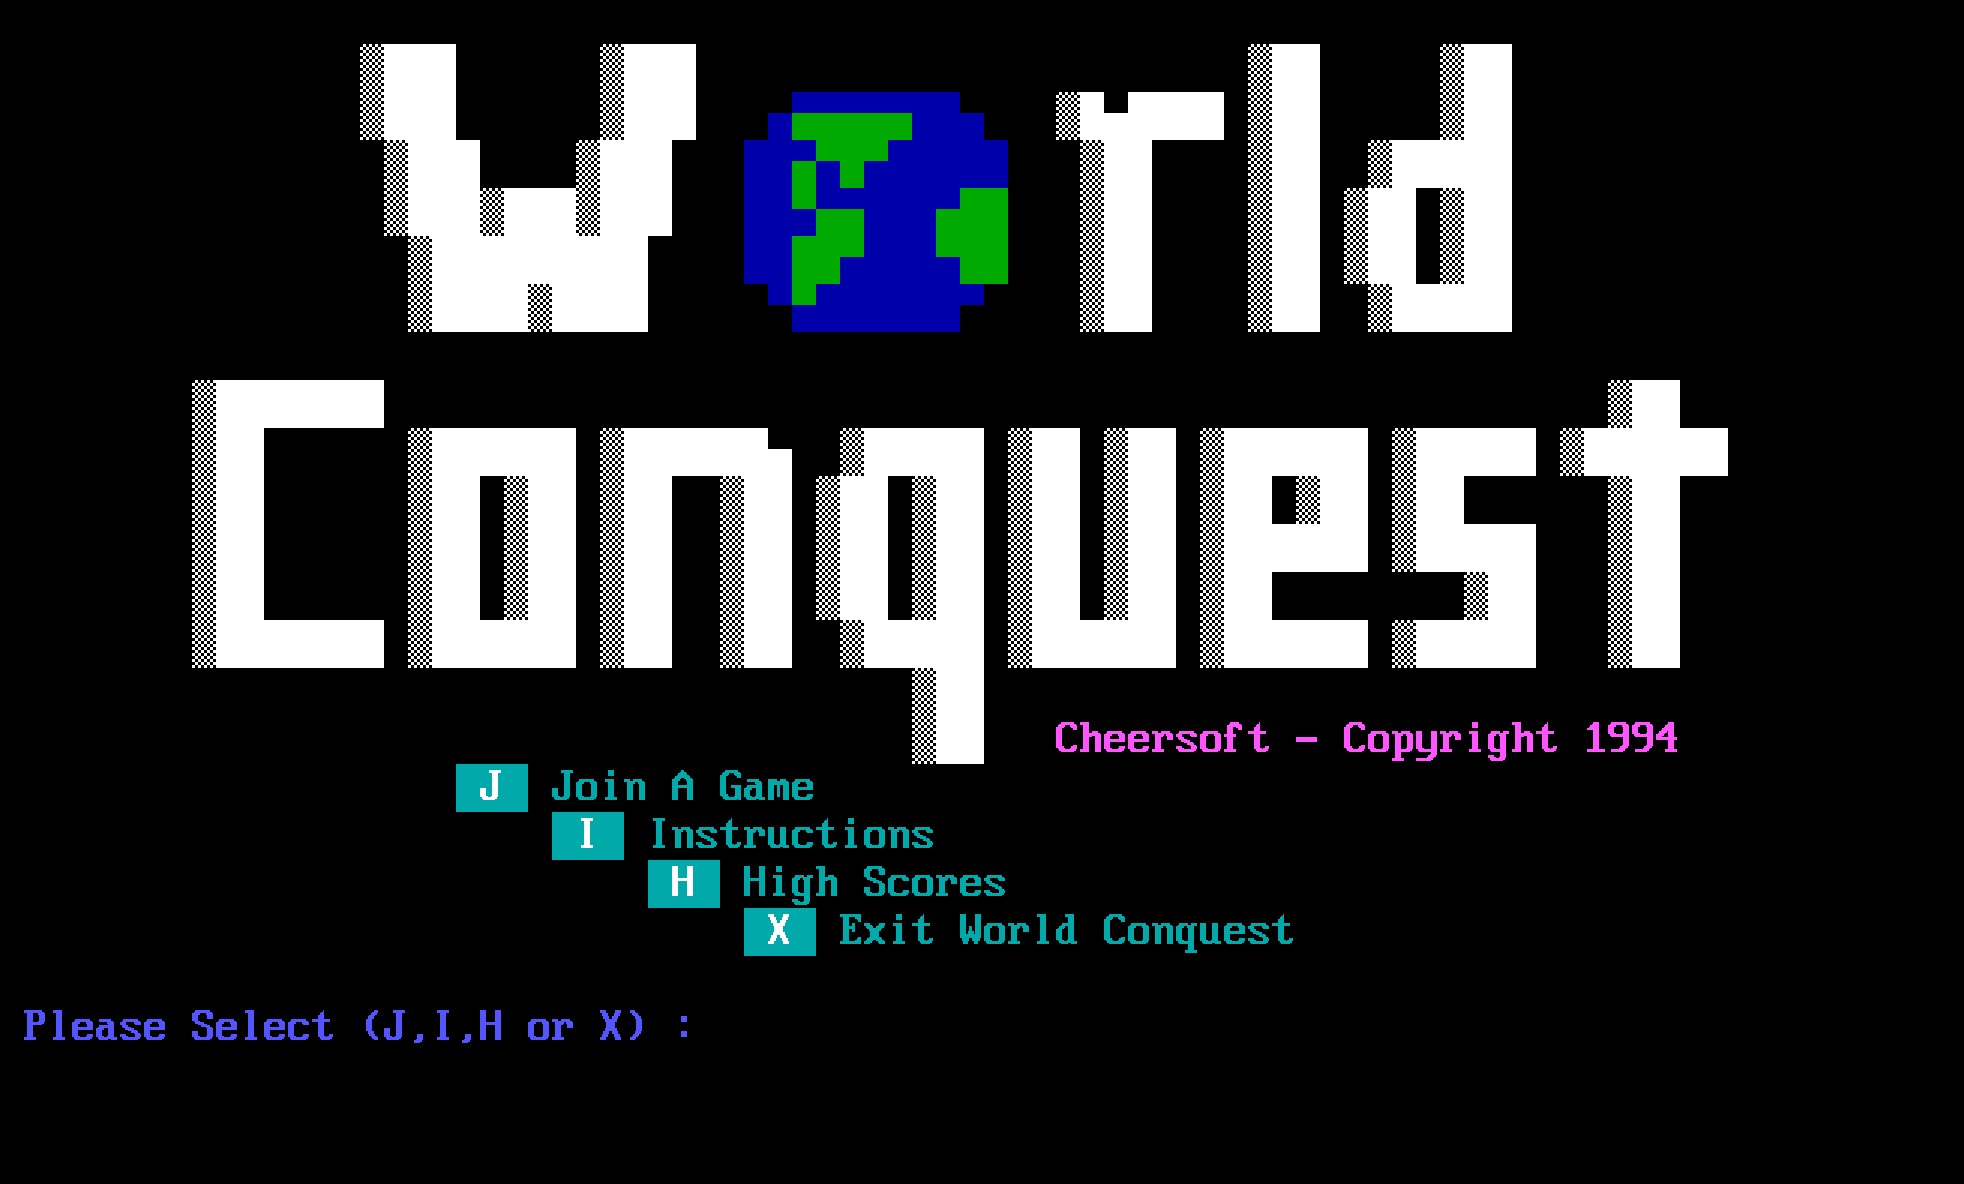 World Conquest intro screen